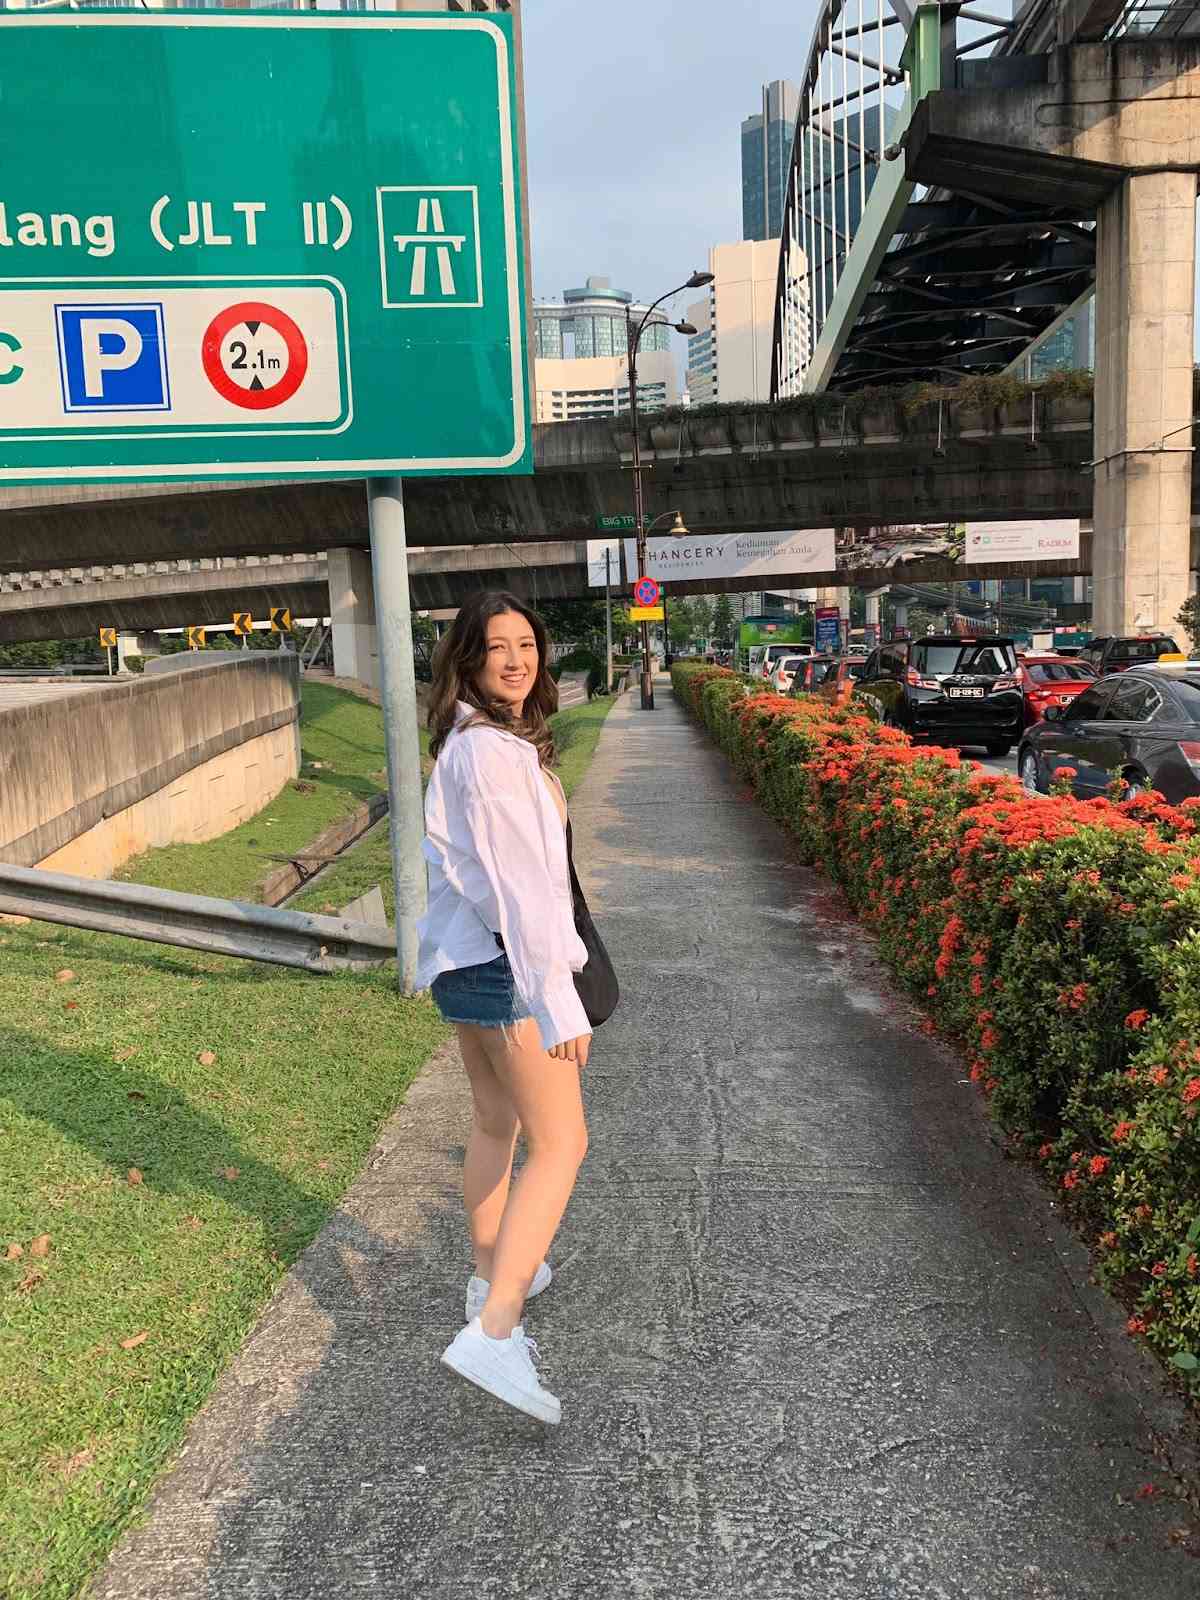 Sophia Mapua takes a walk around outside the stadium in Singapore during TI 11